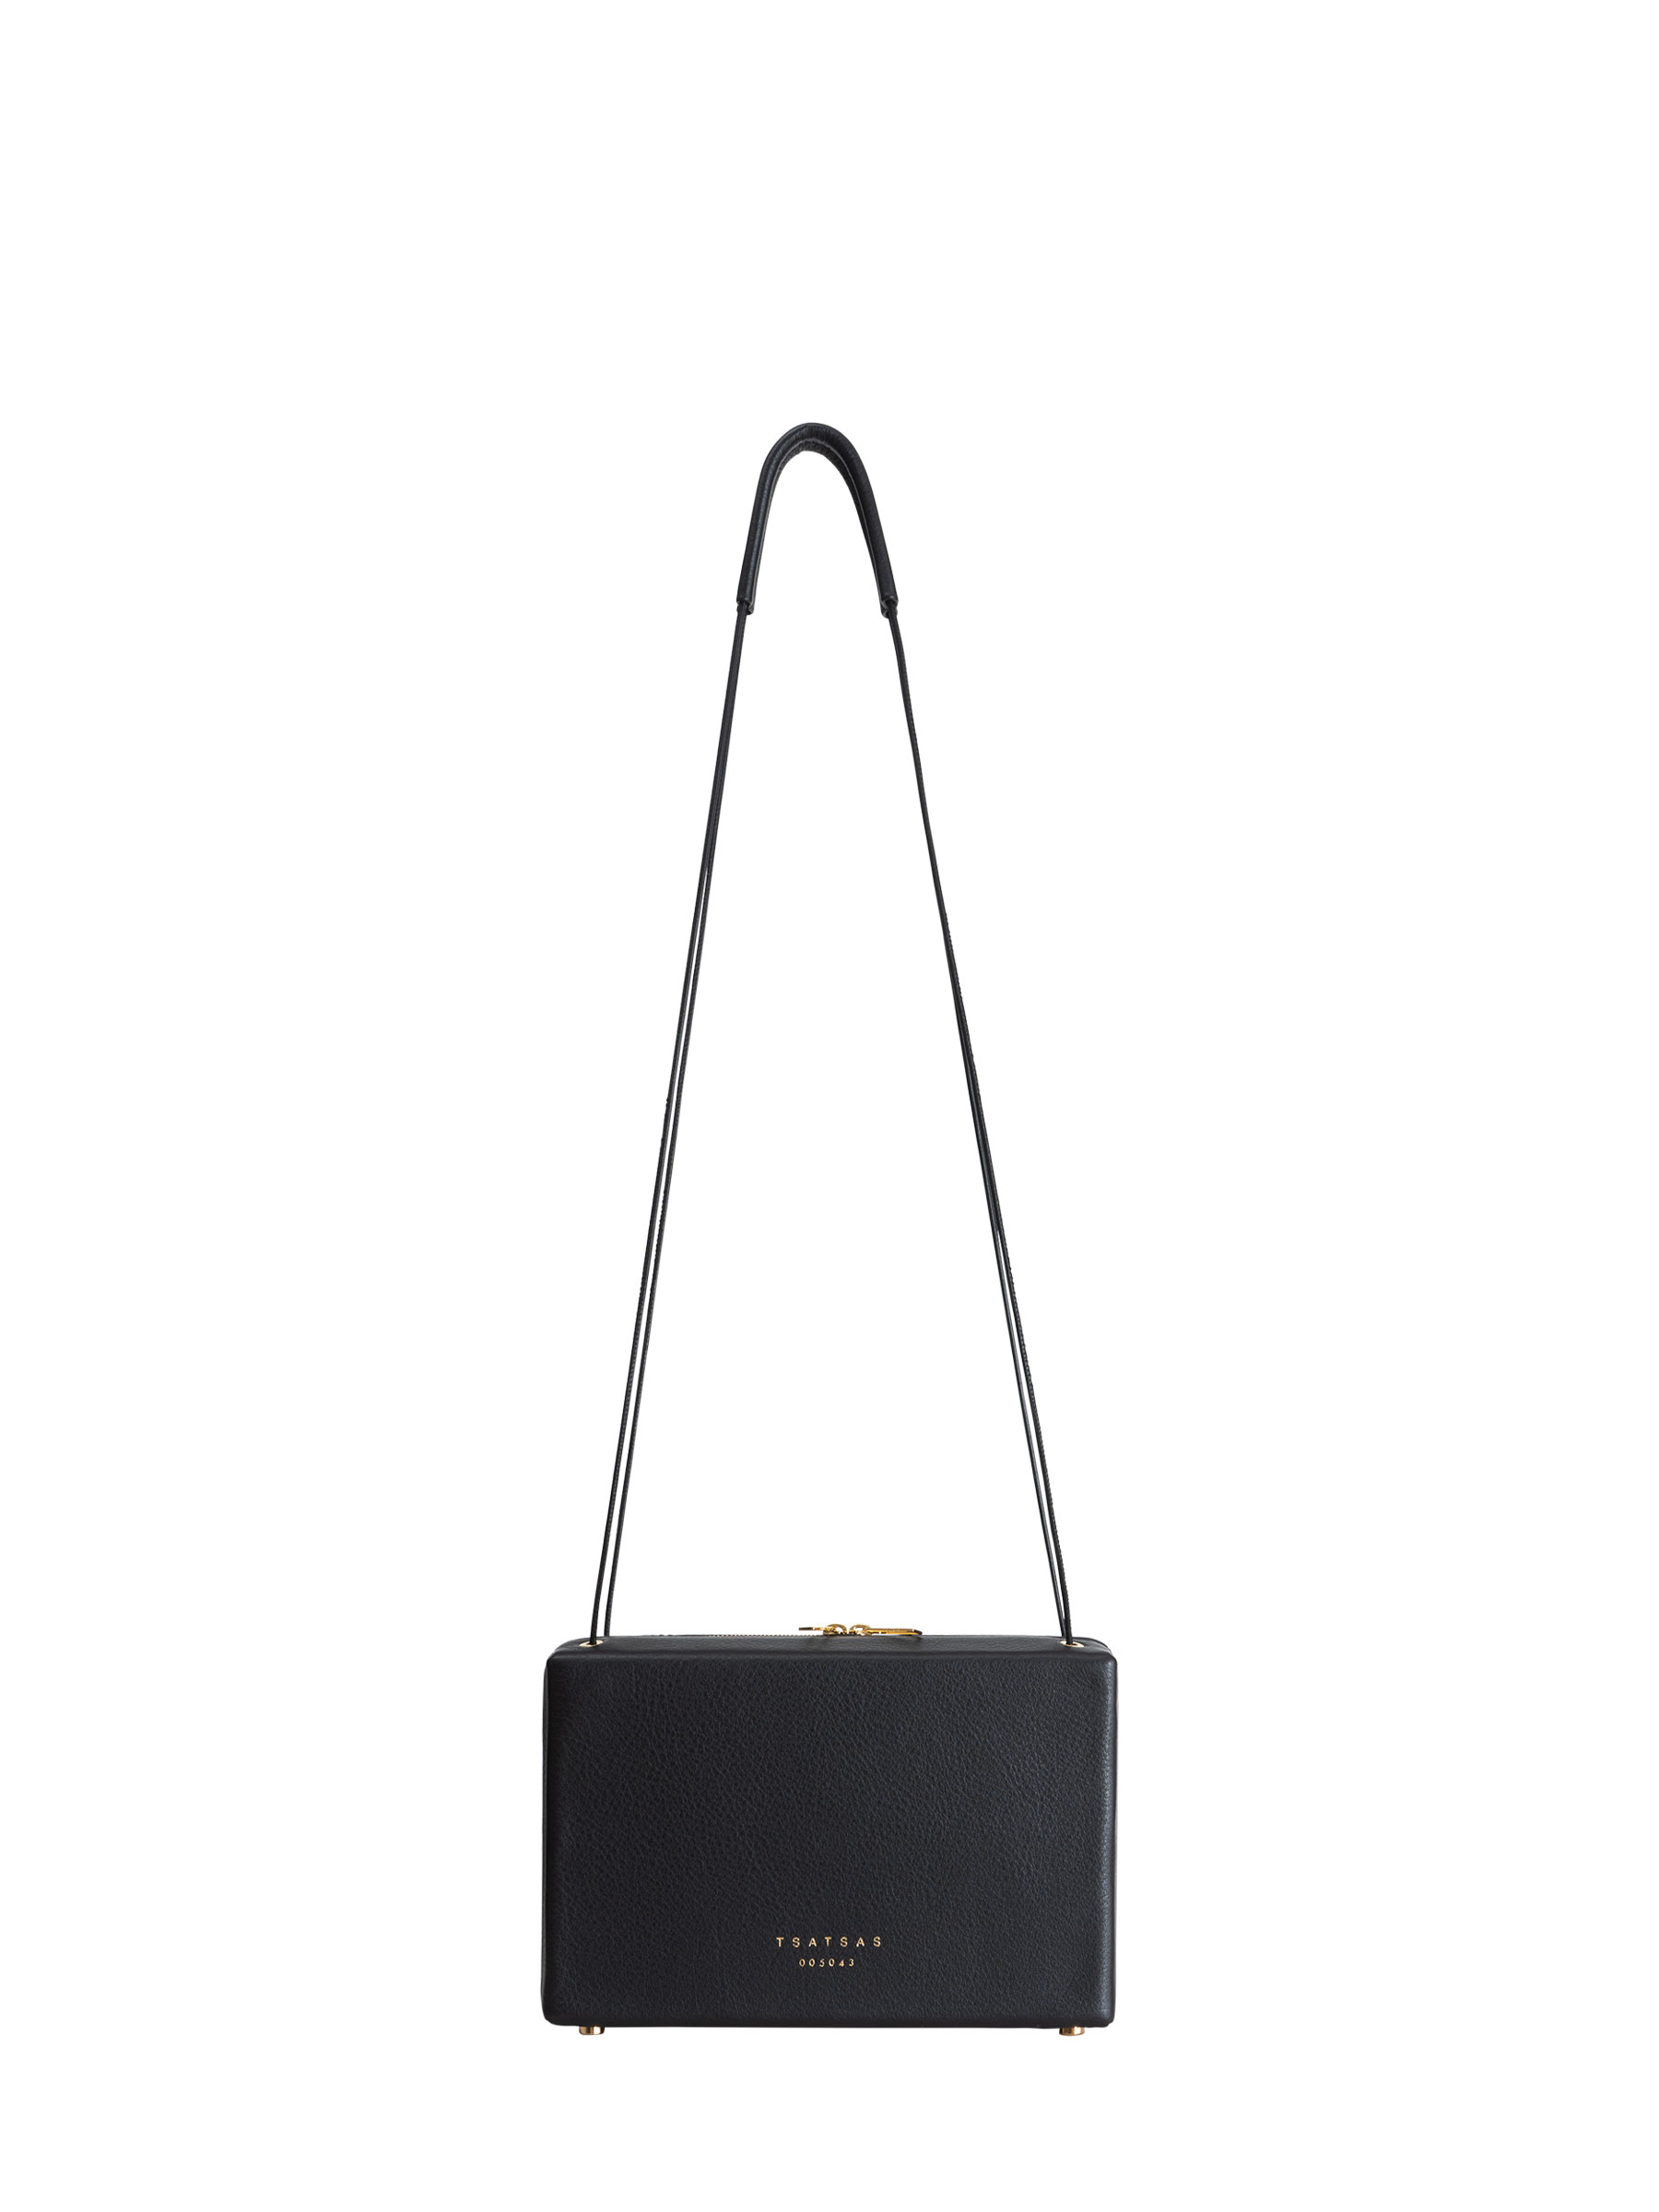 TAPE shoulder bag in black calfskin leather